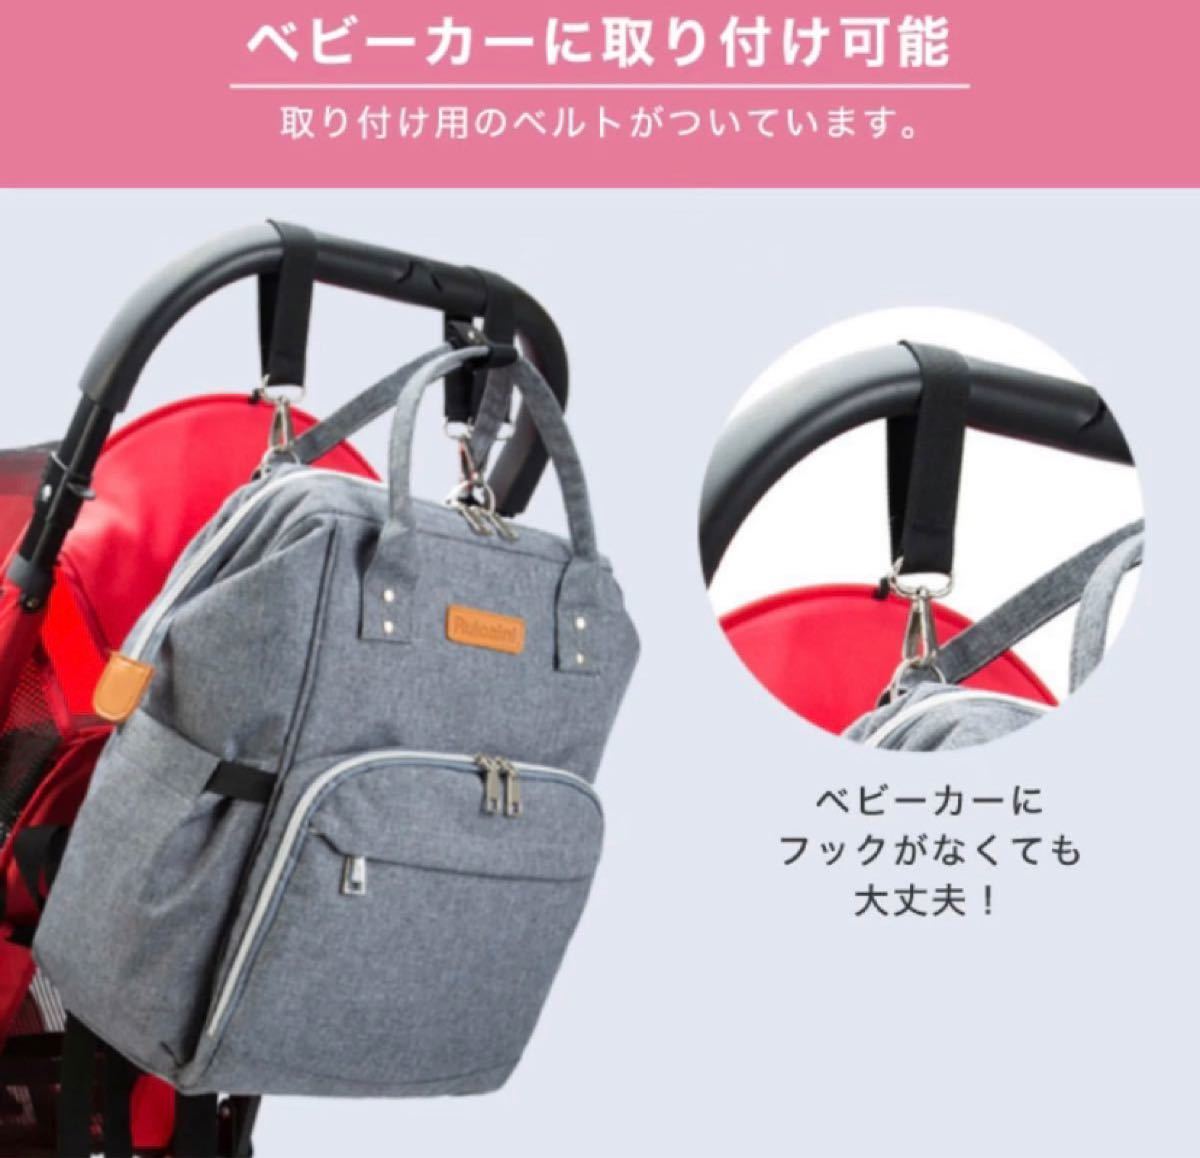 【新品】 マザーズバッグ マザーズリュック バックパック 背面ポケット ママリュック バッグ 軽量 便利 大容量 多機能 多収納